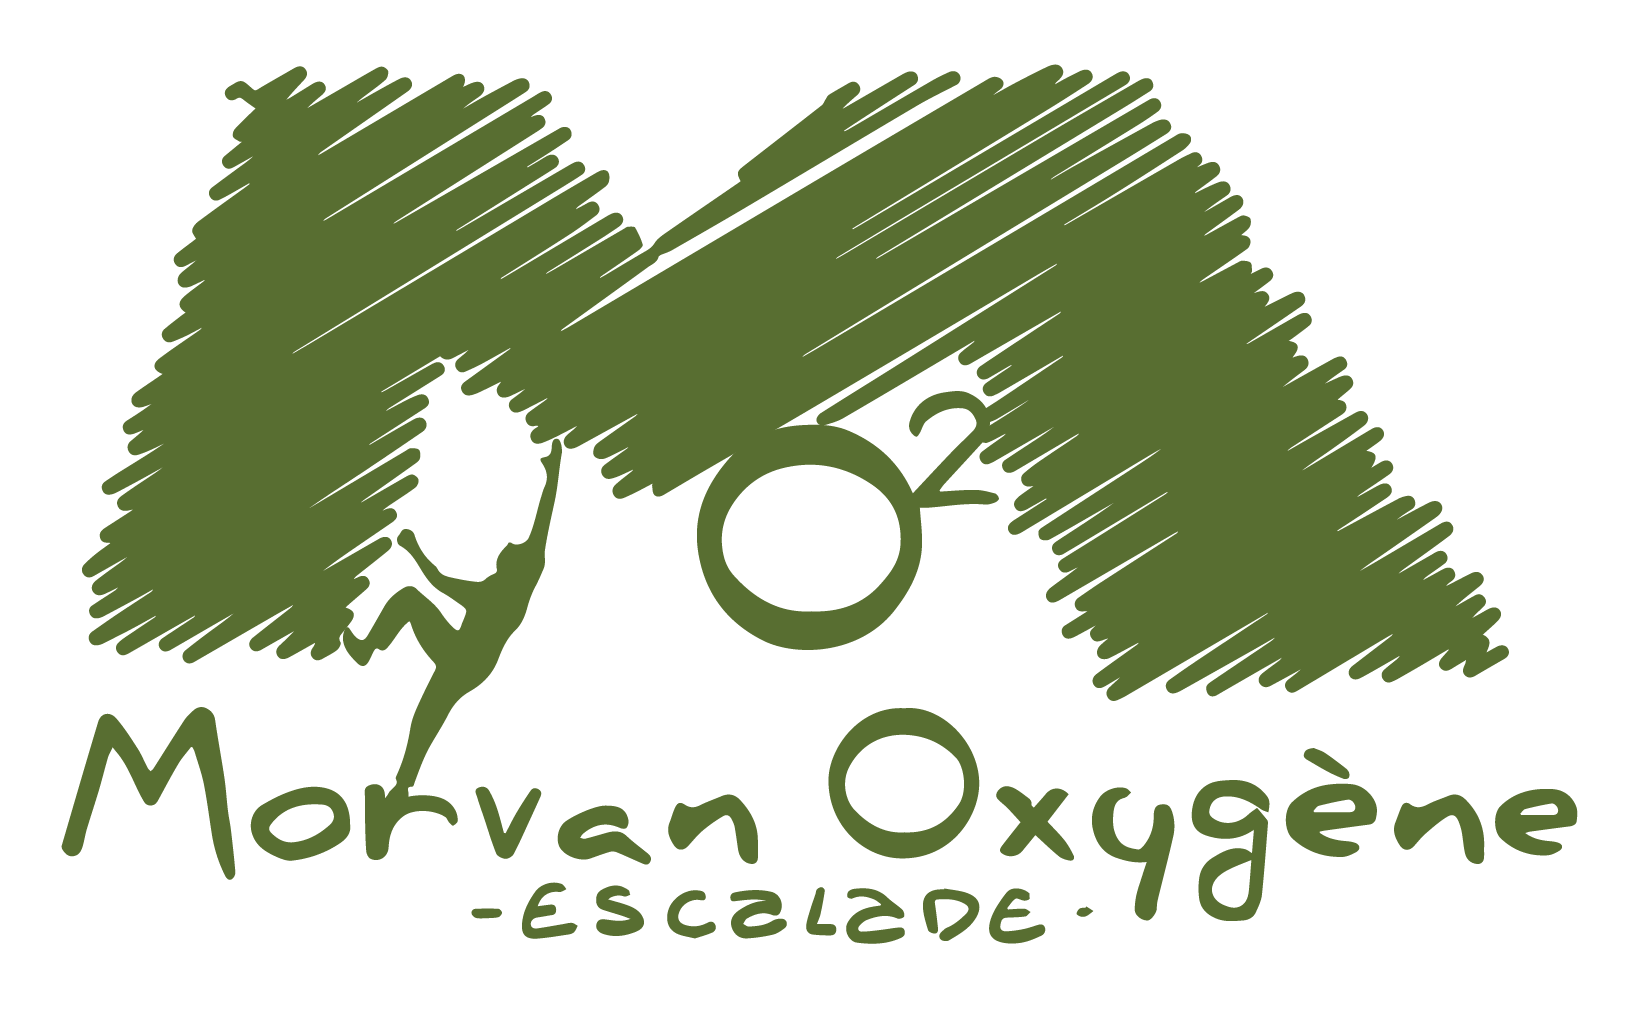 Pour la section du Morvan oxygène escalade nous avons mis au point des t-shirt 100% fabriqué en France dans notre atelier de Nevers.